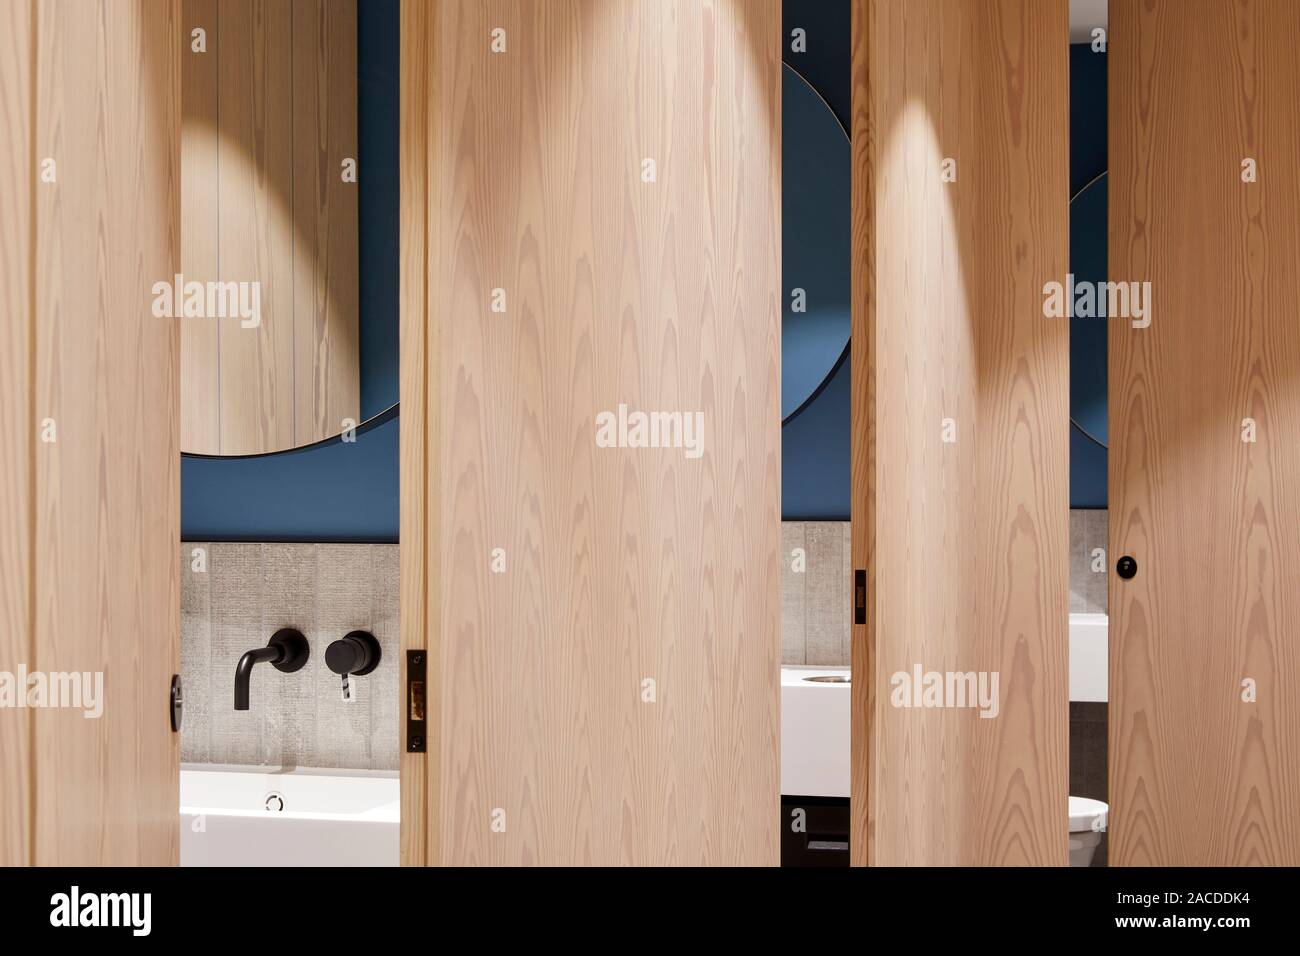 Badezimmer detail. Devon House, London, Vereinigtes Königreich. Architekt: Steif+Trevillion Architekten, 2019. Stockfoto